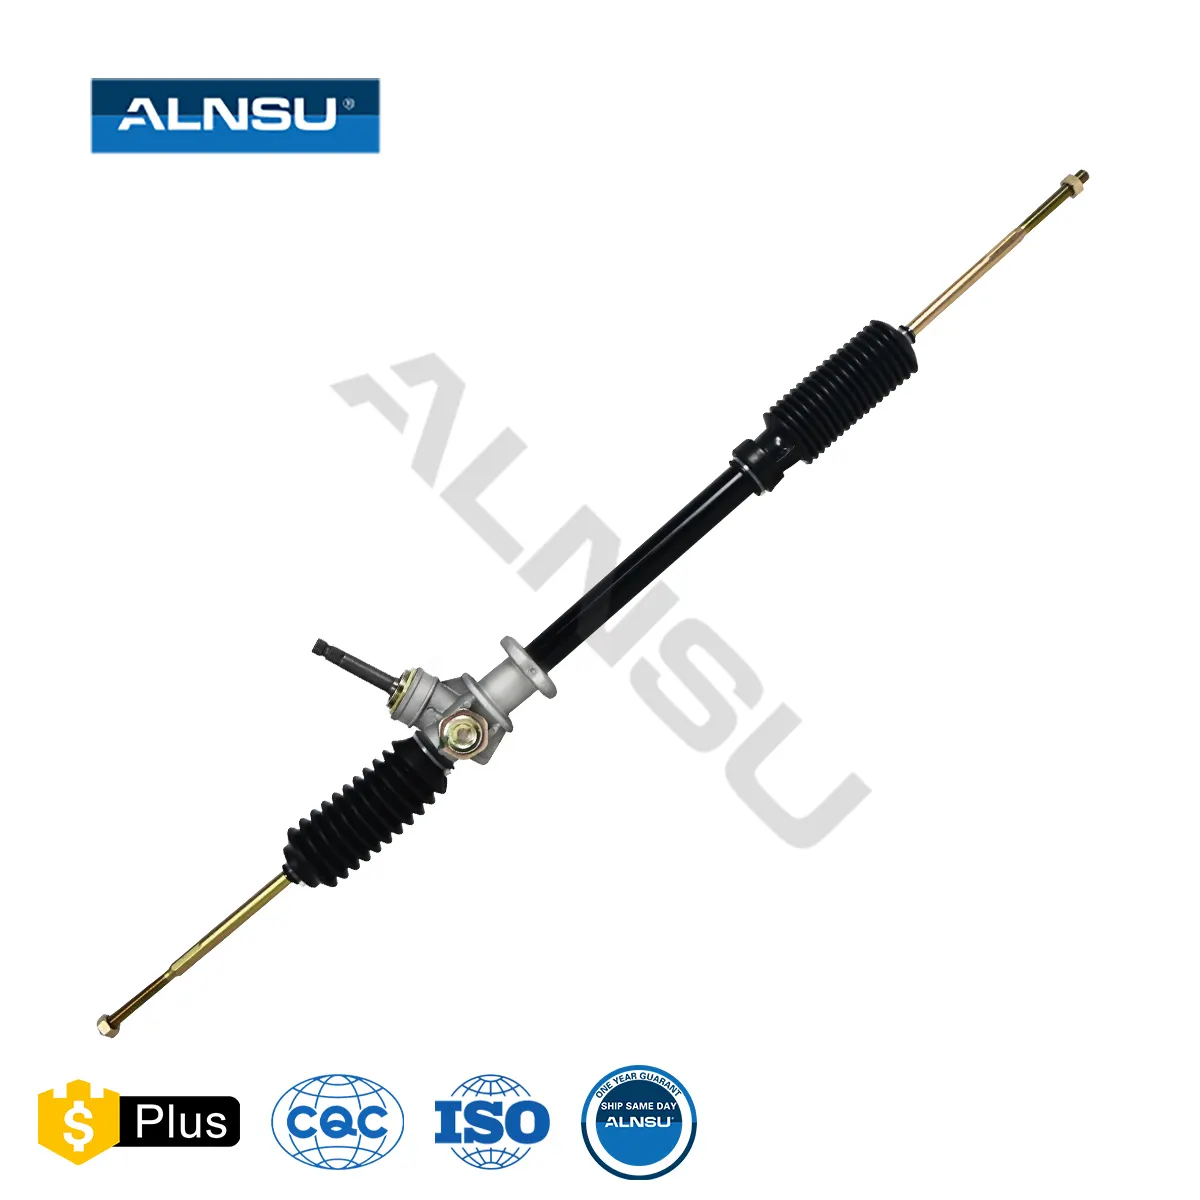 ALNSU Wholesale Price Mechanical Power Steering Gear Box For NISSAN Sunny B13 48001-50Y00 48001-Y02G1 48001-65Y10 48001-60R00